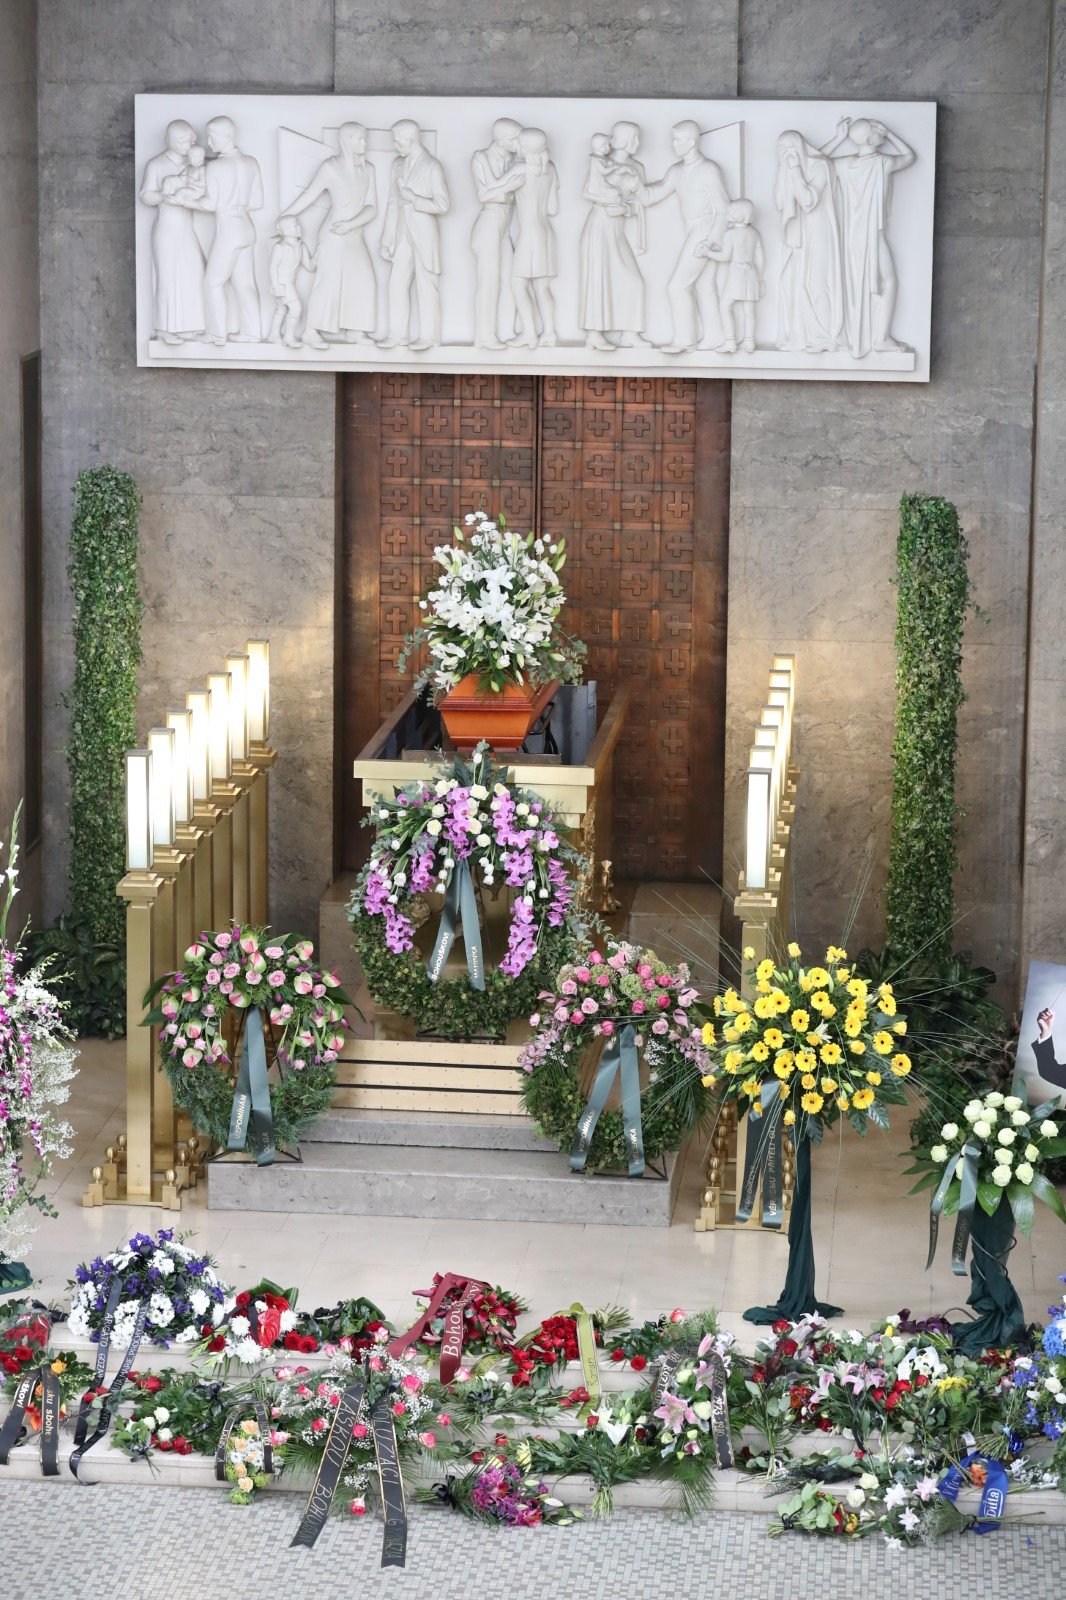 Pohřeb Bohumila Kulínského